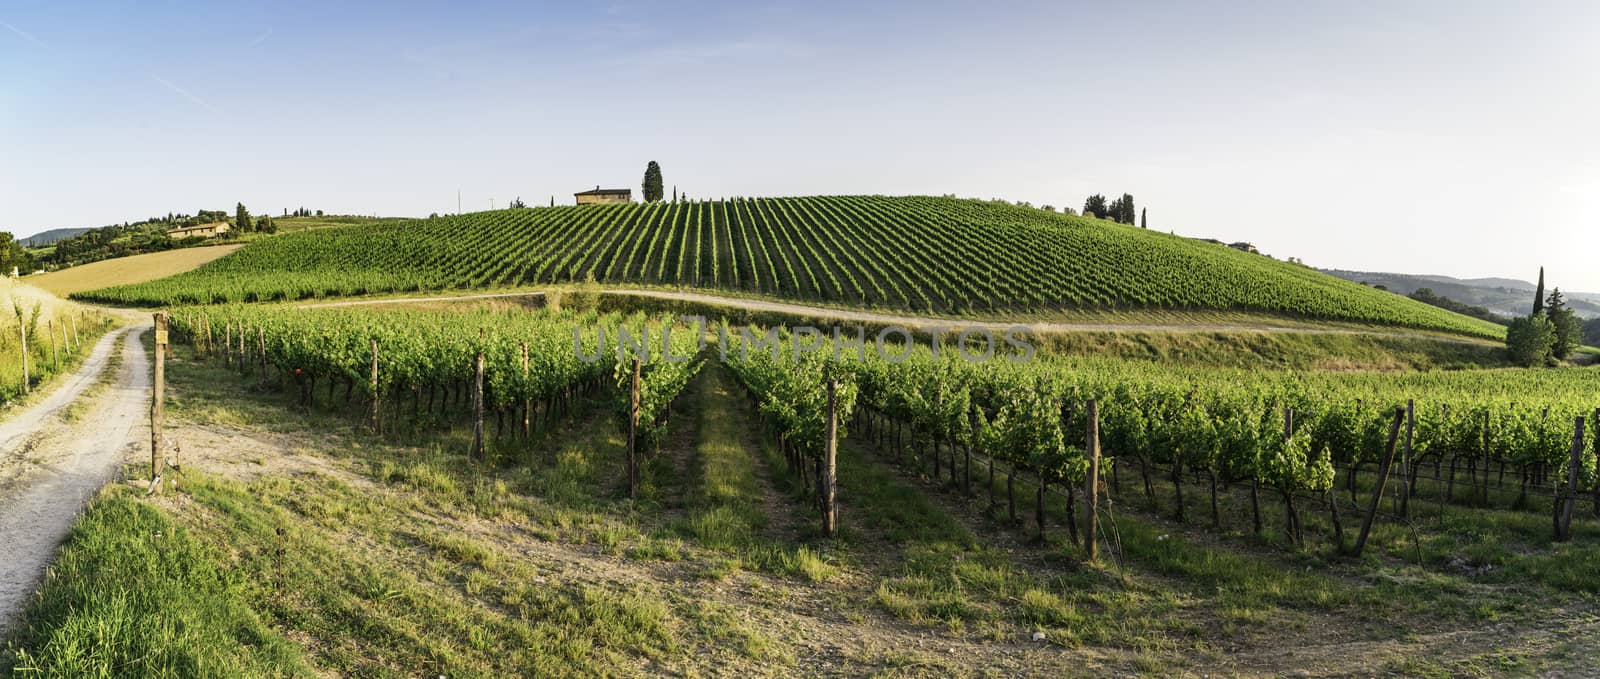 Vineyards in Tuscany by deyan_georgiev